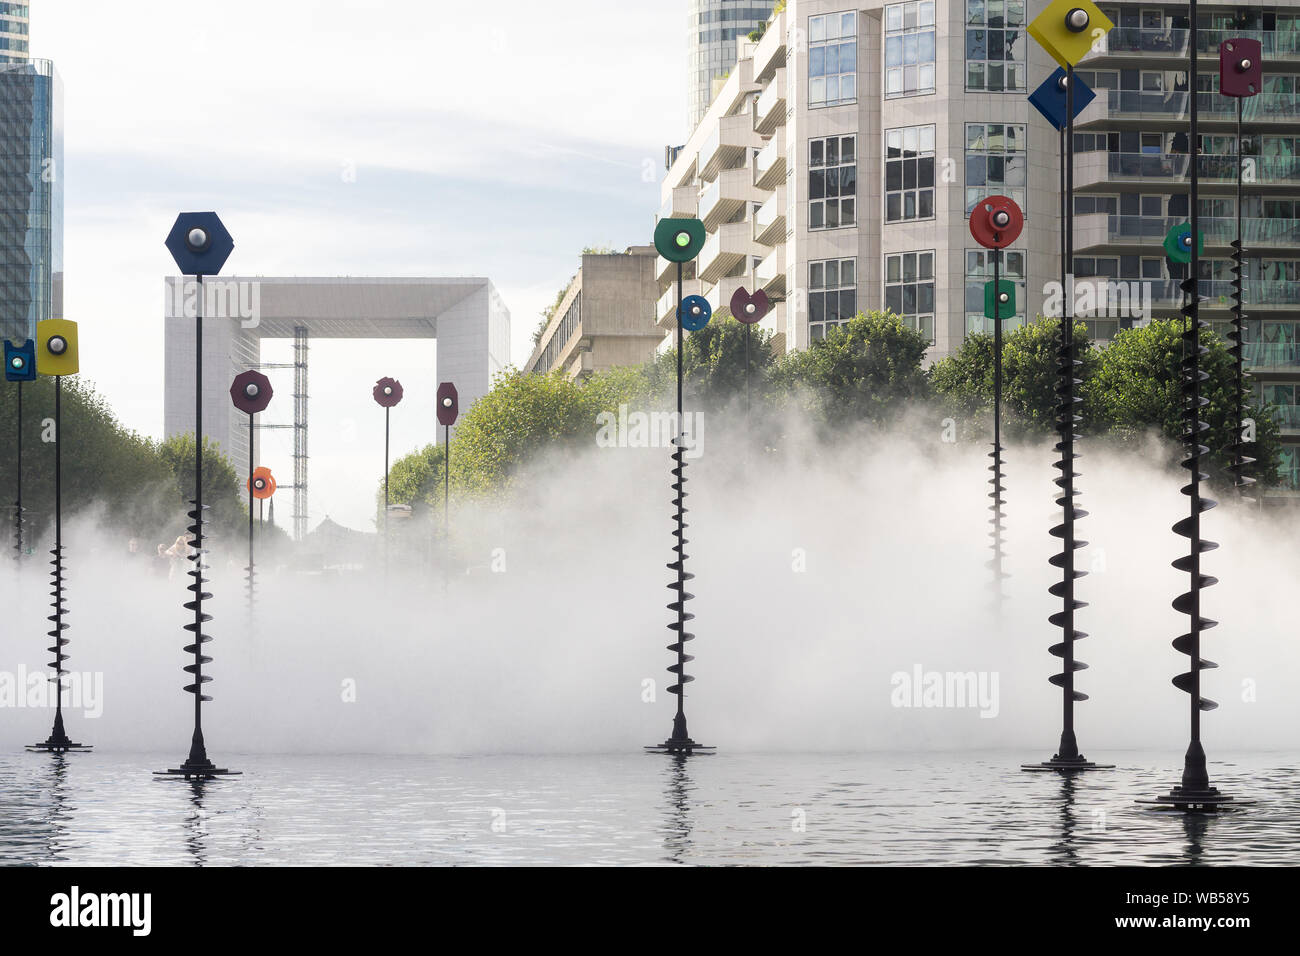 Paris La Défense de l'œuvre - sculpture de brume Fujiko Nakaya installés dans le Takis fontaines dans le quartier de la défense Paris, France, Europe. Banque D'Images